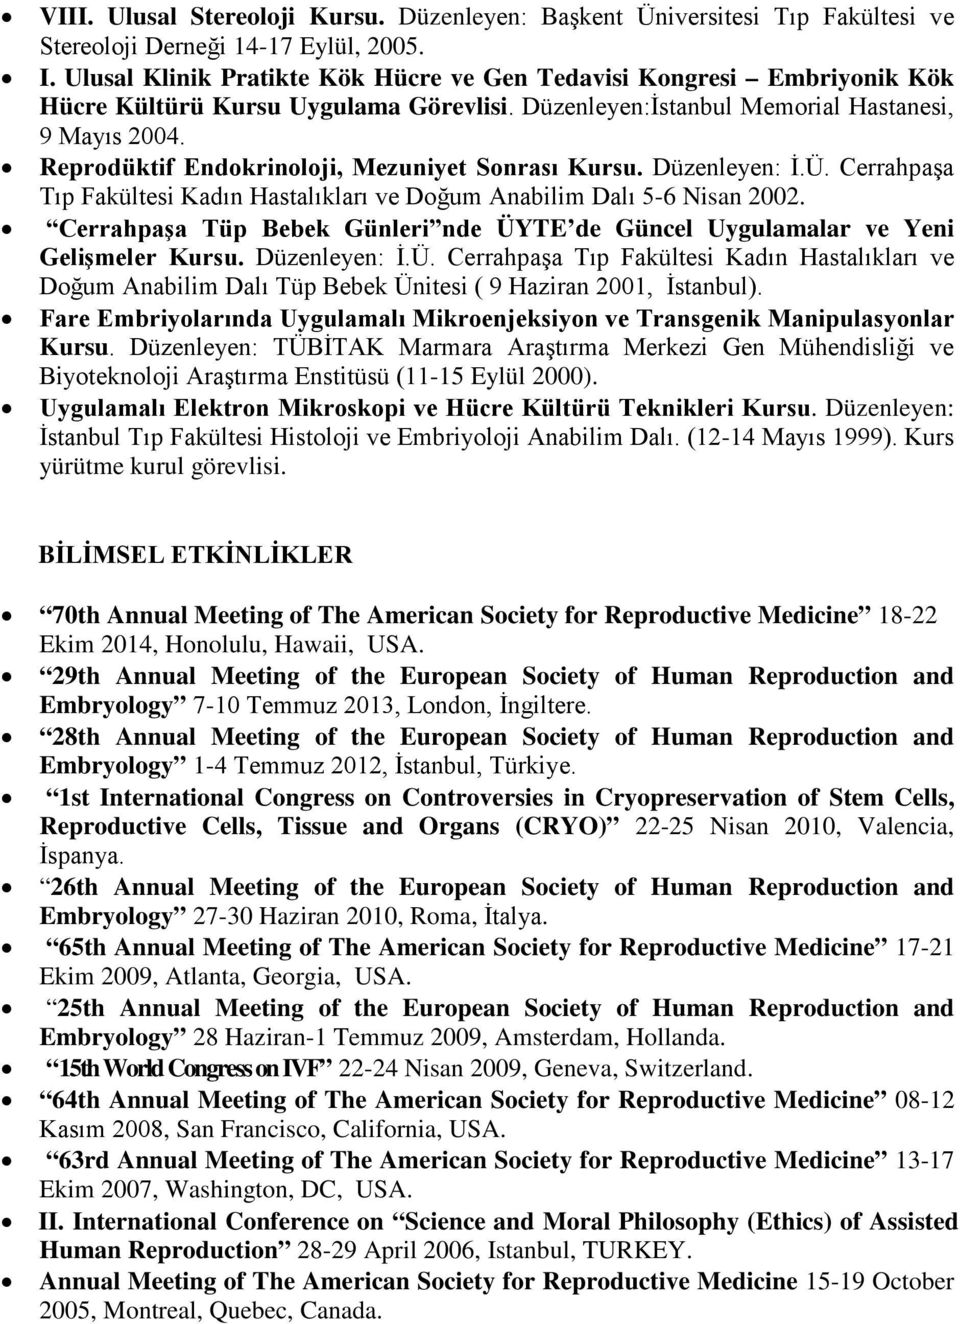 Reprodüktif Endokrinoloji, Mezuniyet Sonrası Kursu. Düzenleyen: İ.Ü. Cerrahpaşa Tıp Fakültesi Kadın Hastalıkları ve Doğum Anabilim Dalı 5-6 Nisan 2002.